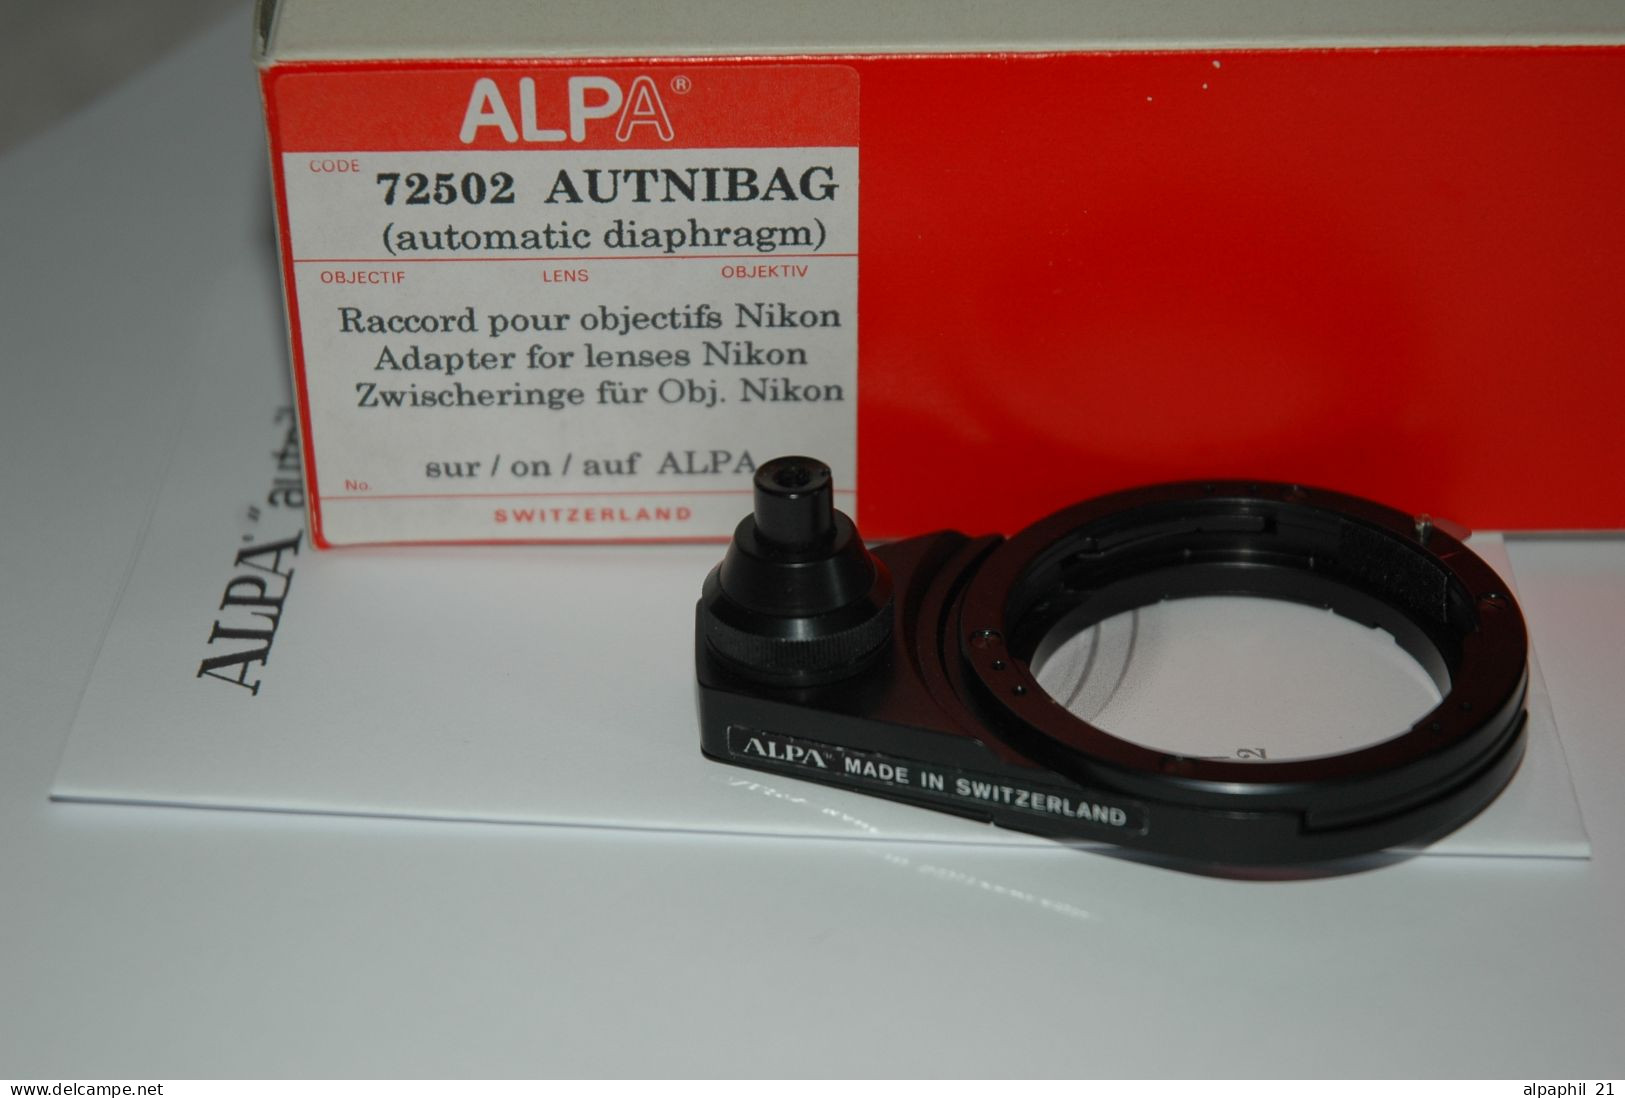 Alpa Autnibag "72502" - Supplies And Equipment